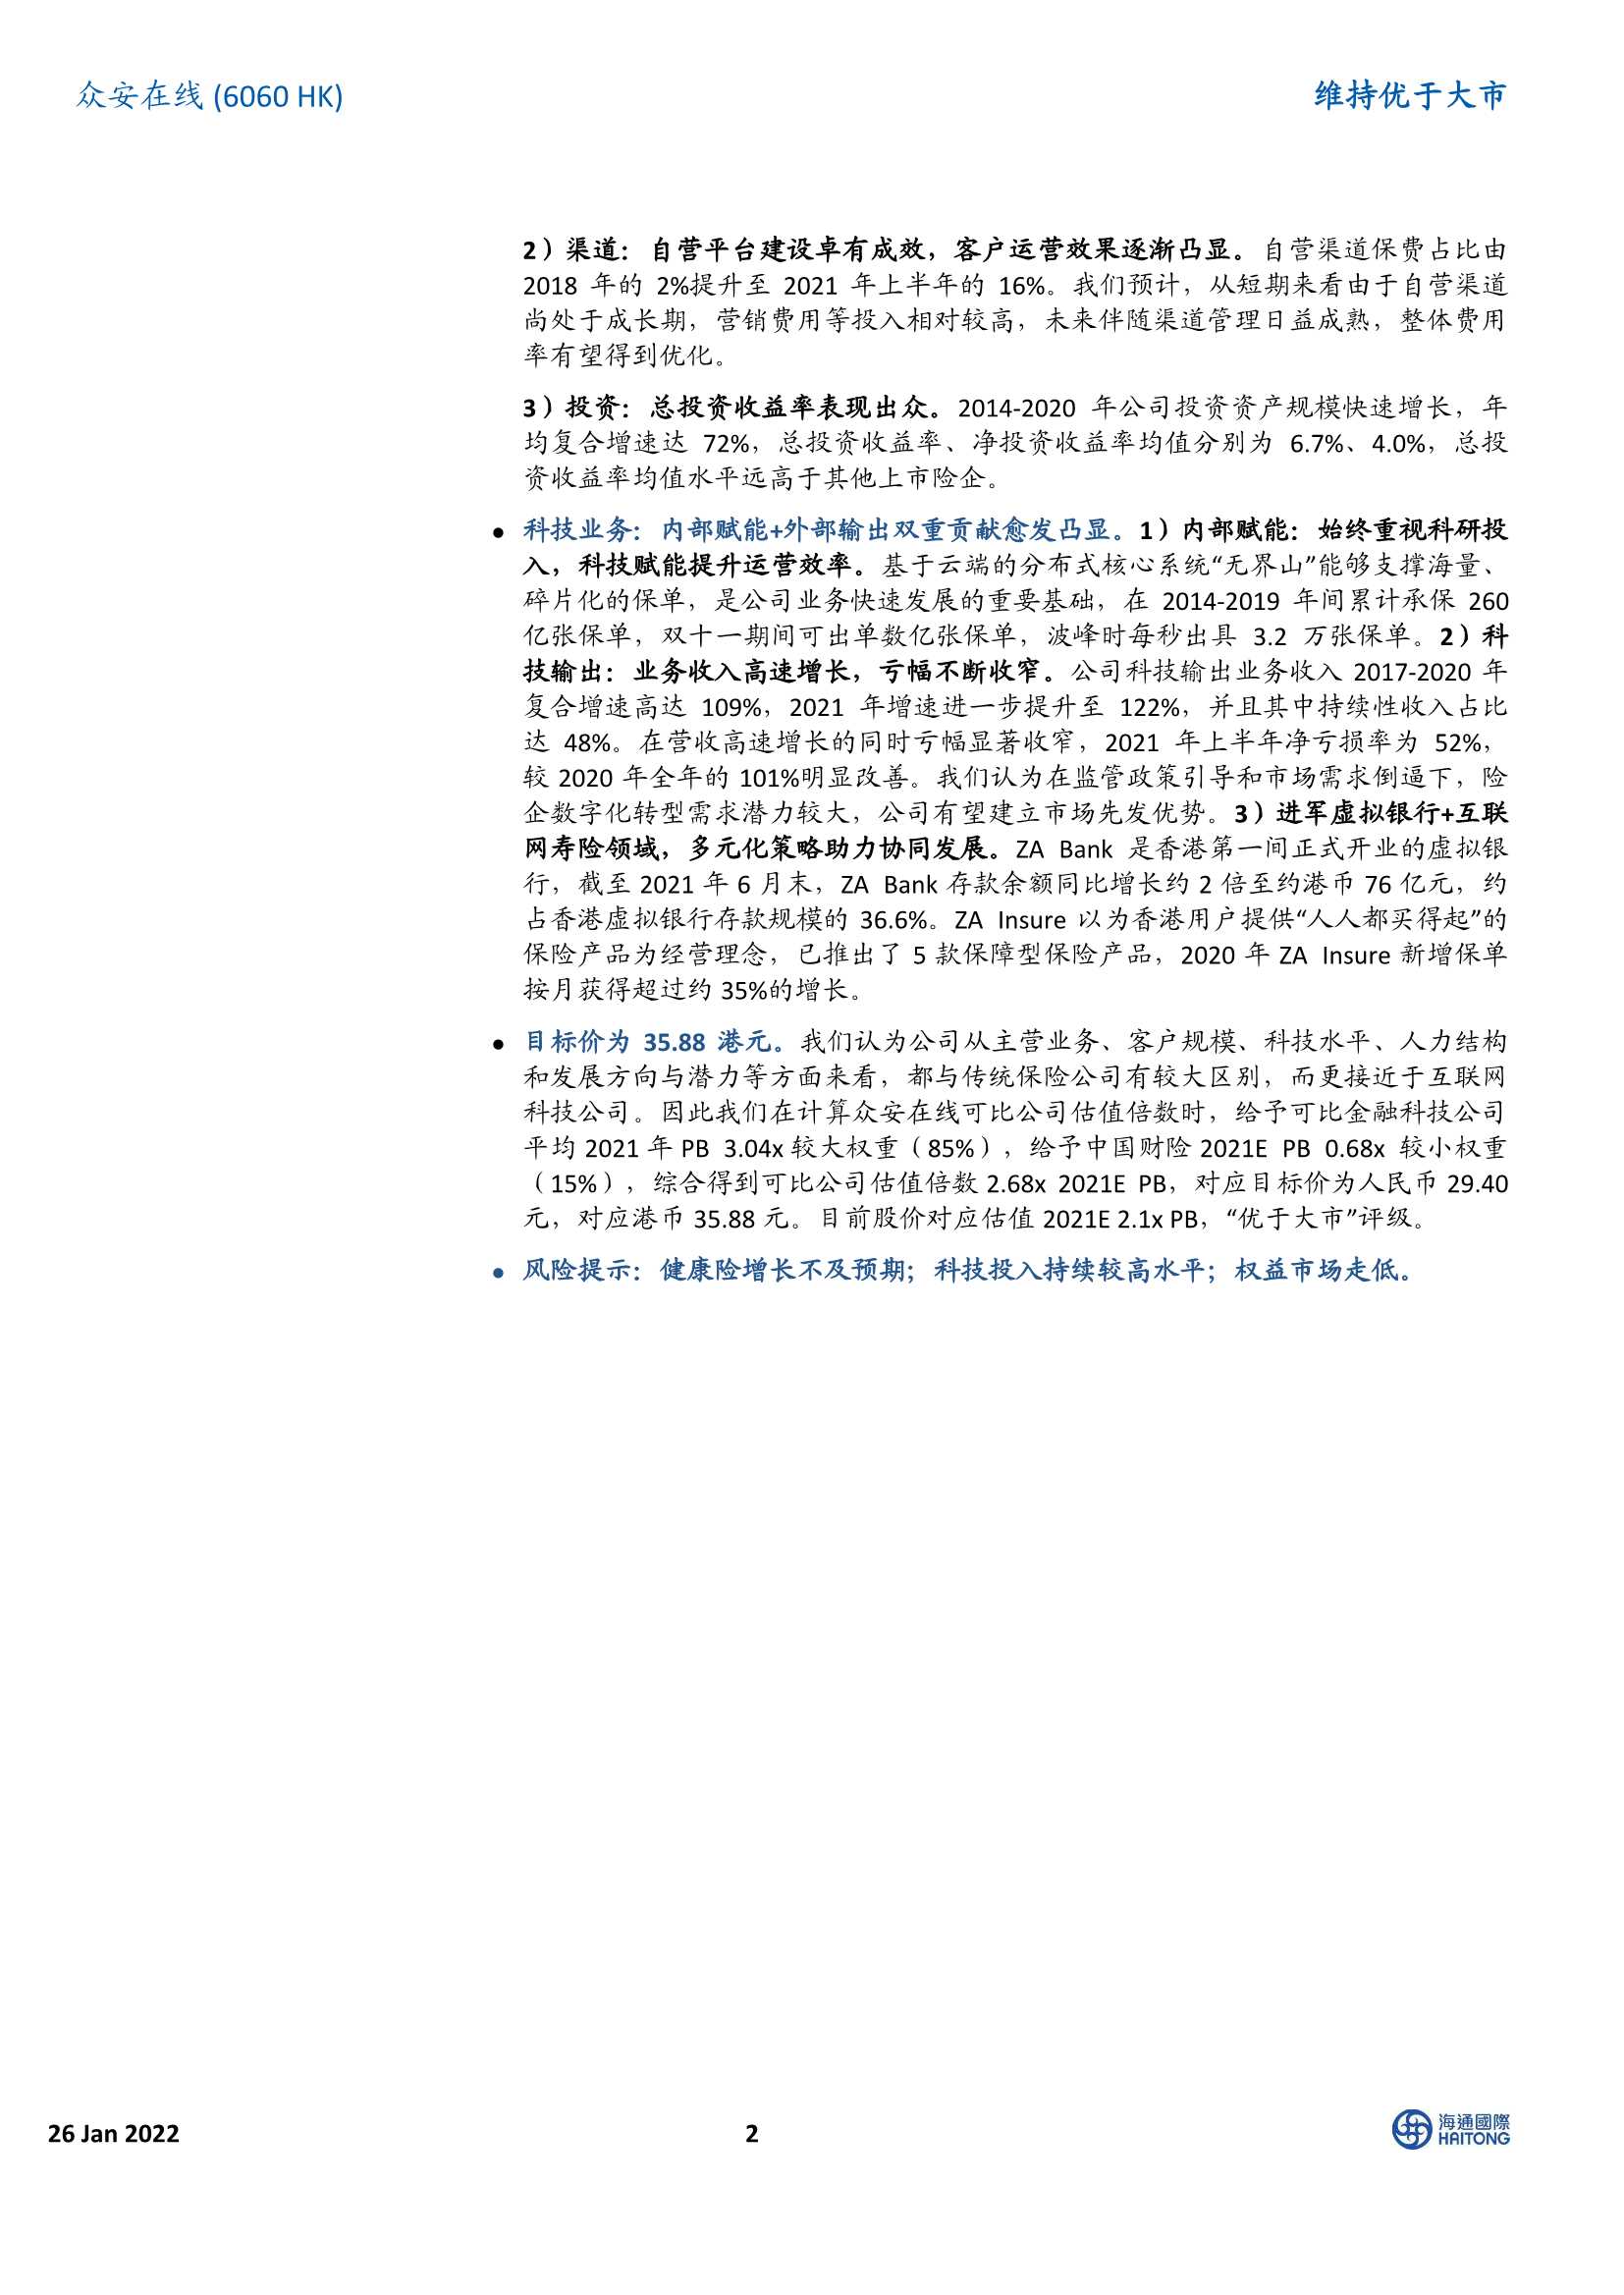 海通国际-众安在线-6060.HK-保险 科技双轮驱动，稳居互联网财险市场龙头位置-20220126-43页